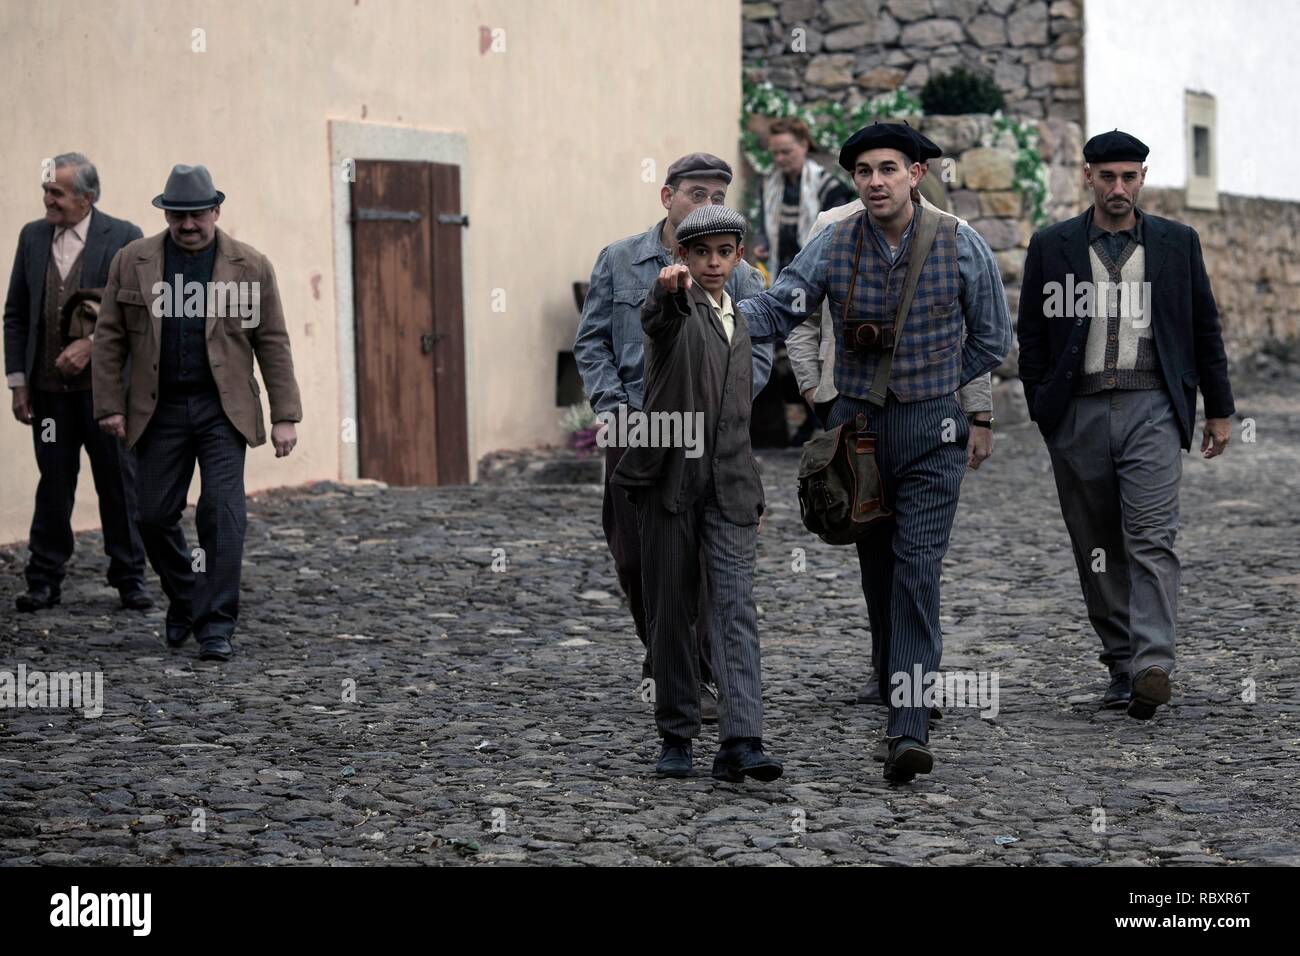 El fotografo de mauthausen fotografías e imágenes de alta resolución - Alamy